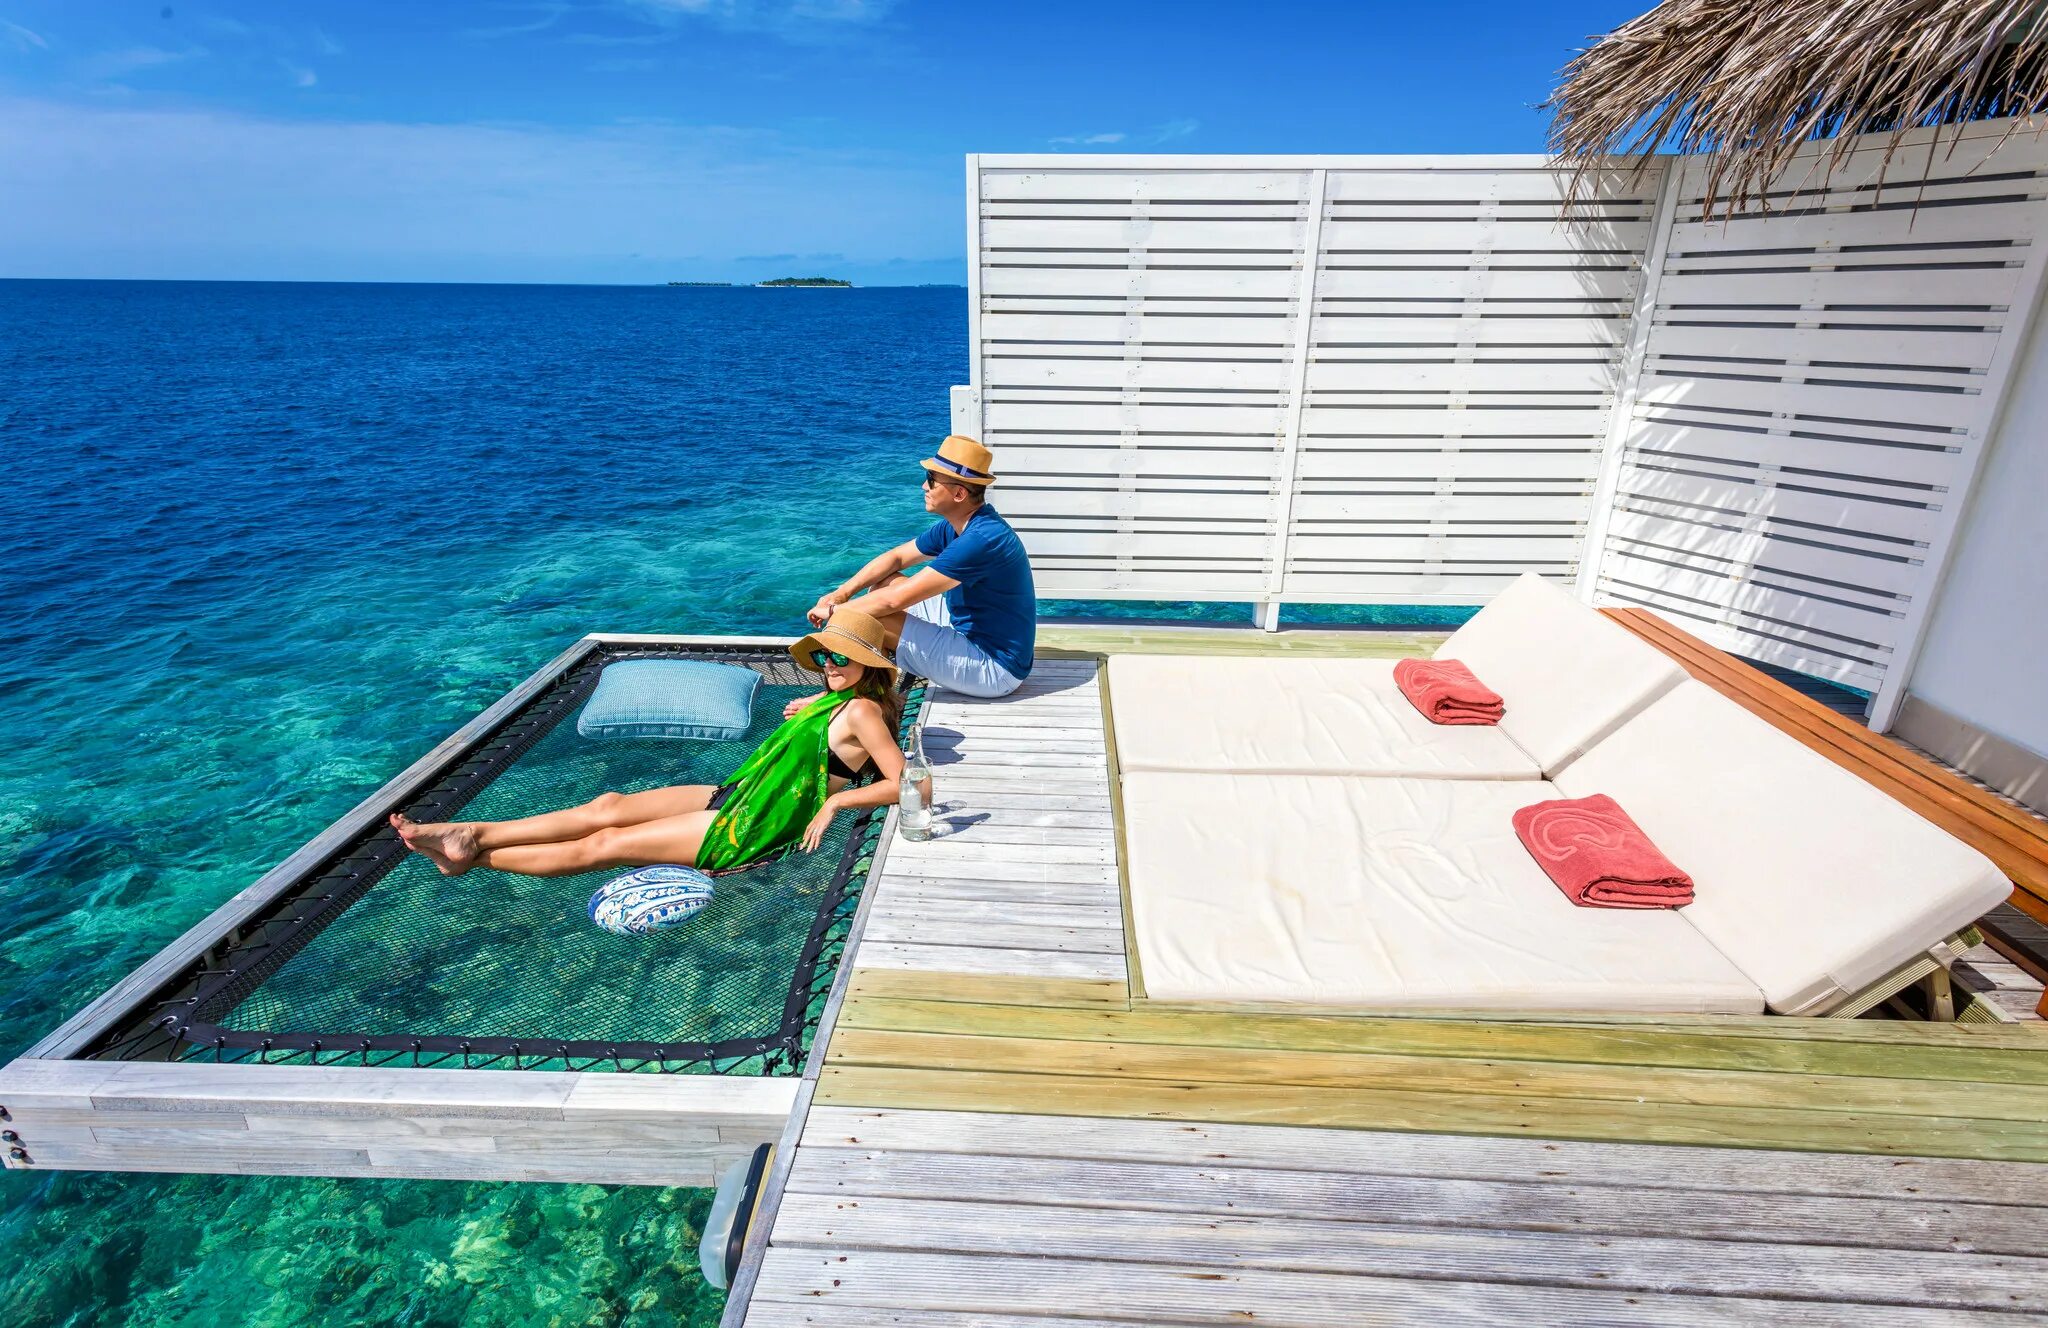 Купить путевку все включено из спб. Centara Grand Island Resort & Spa 5*. Centara Grand Island Resort & Spa 5* Duplex Beach Villa. Grand Island Resort & Spa Maldives 5*. Water Villa Мальдивы.